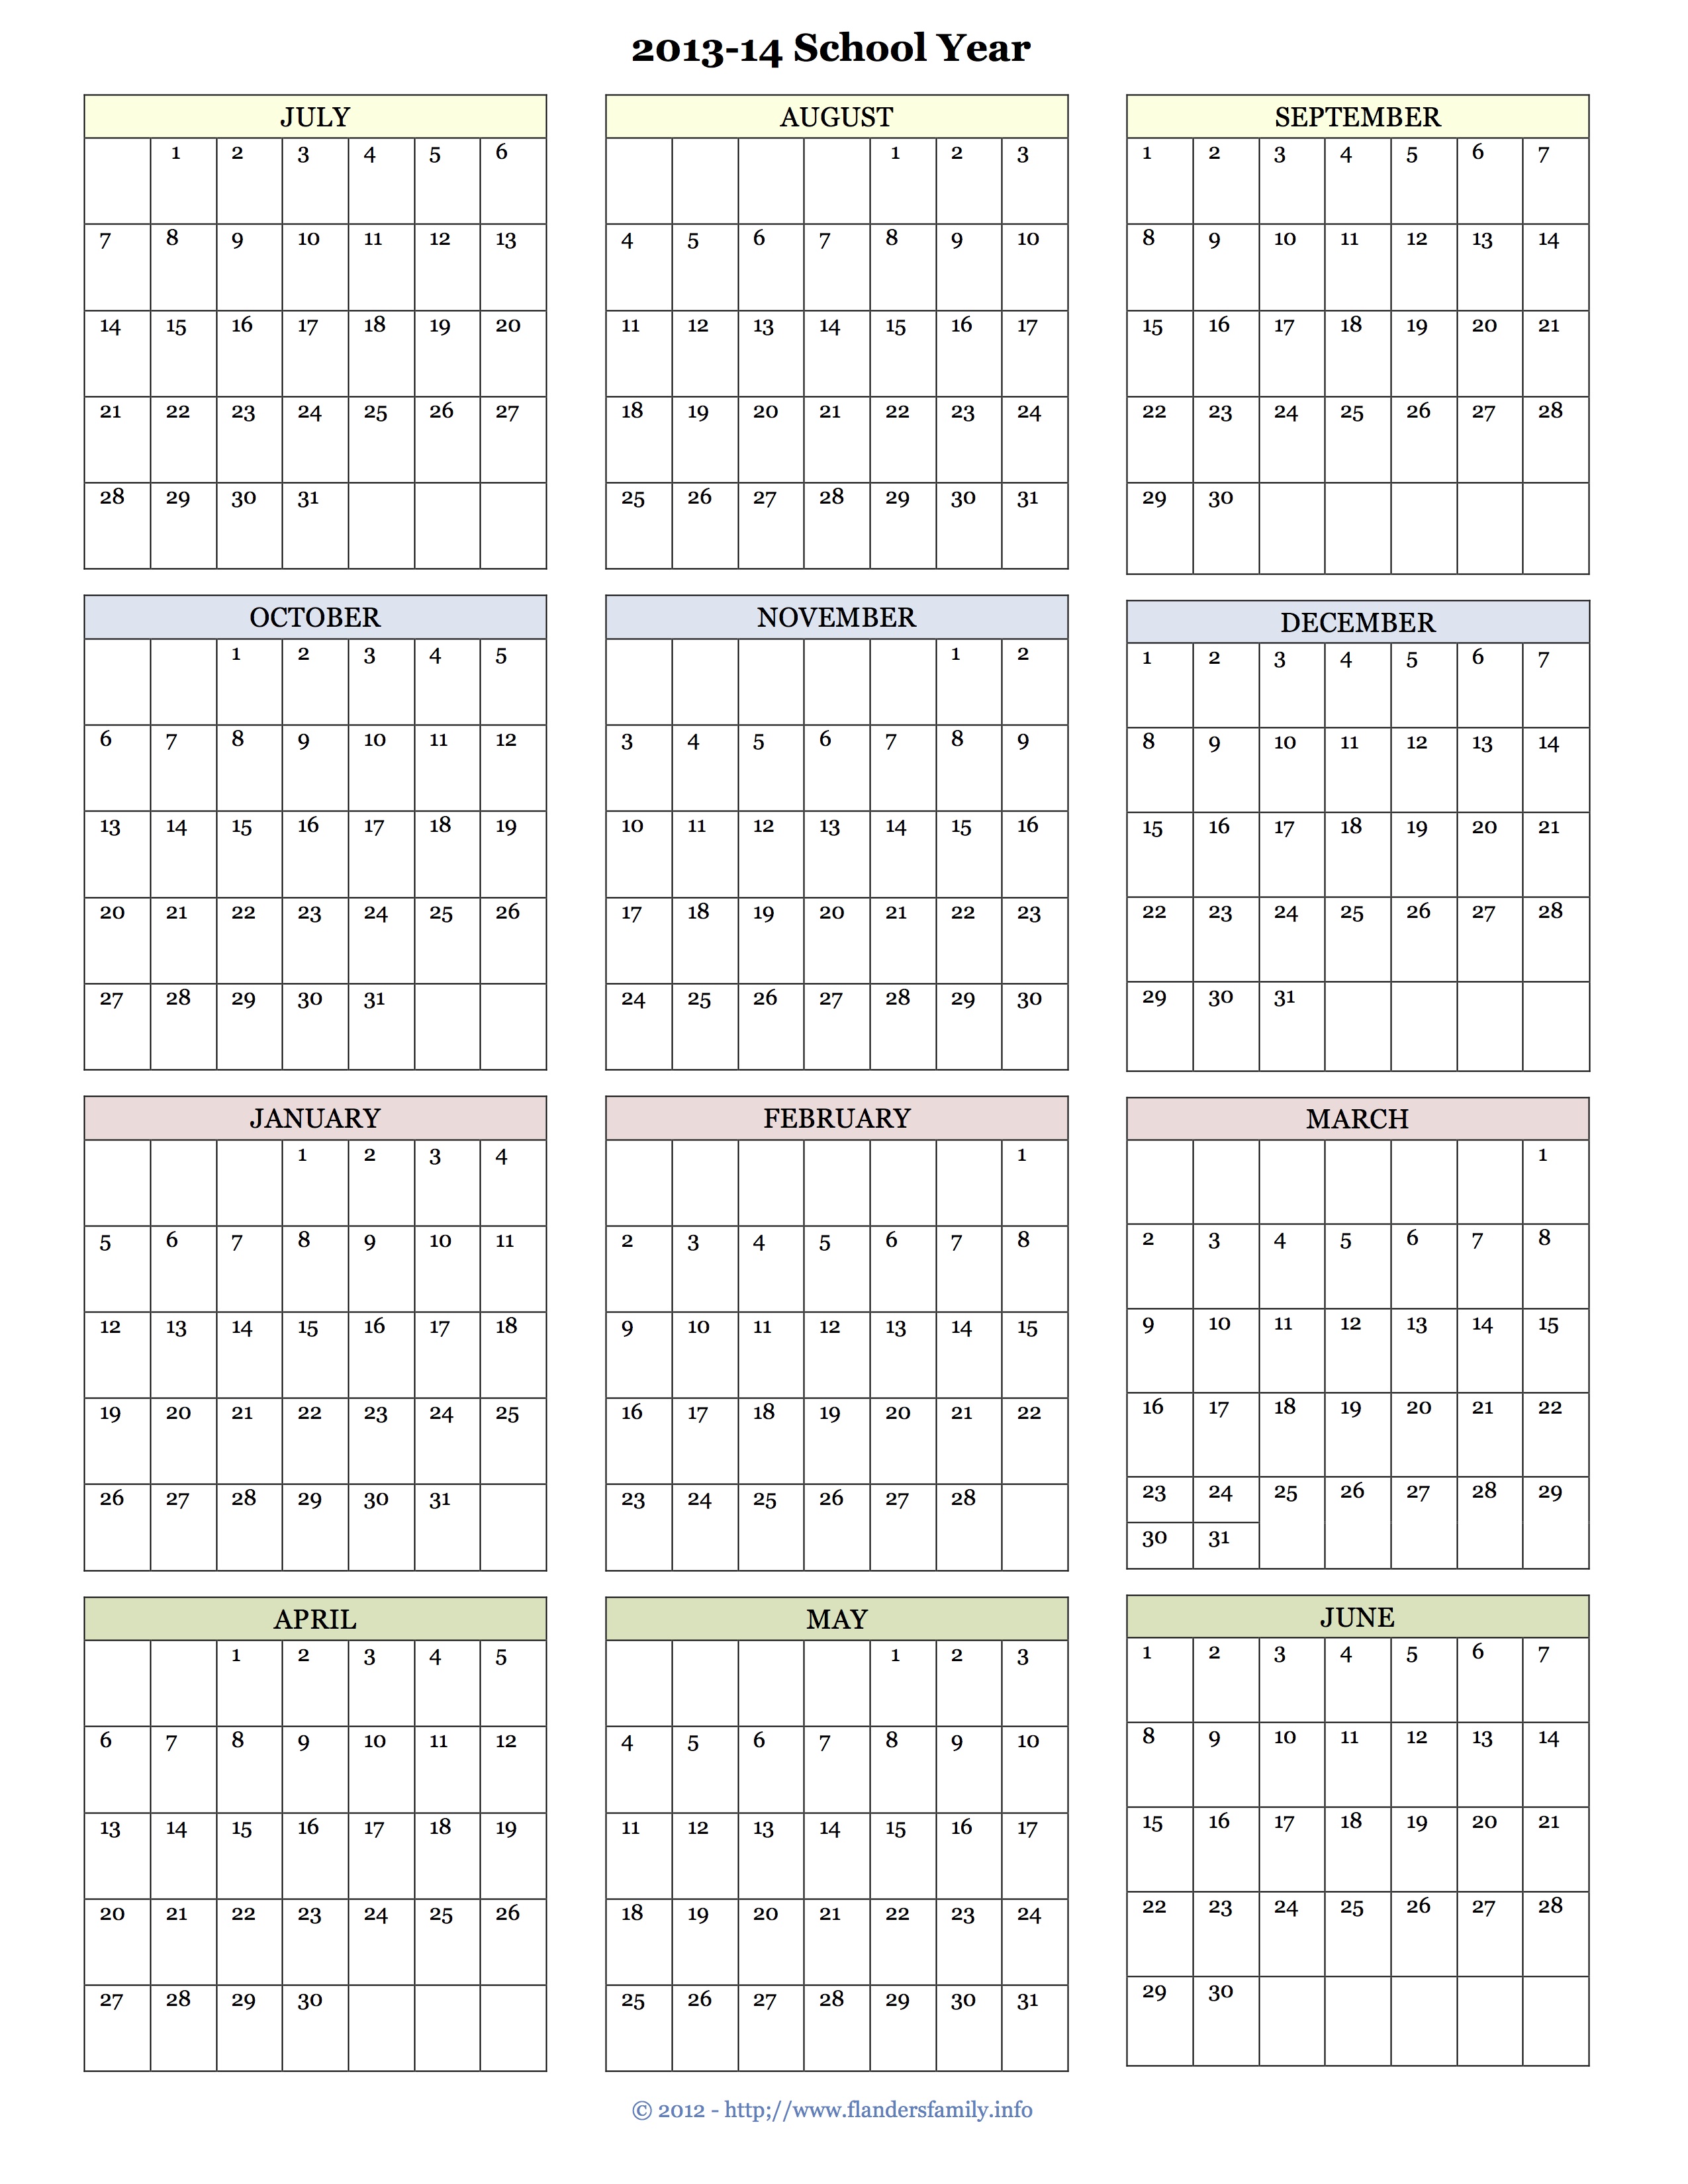 2013 Calendar - Amazon.de